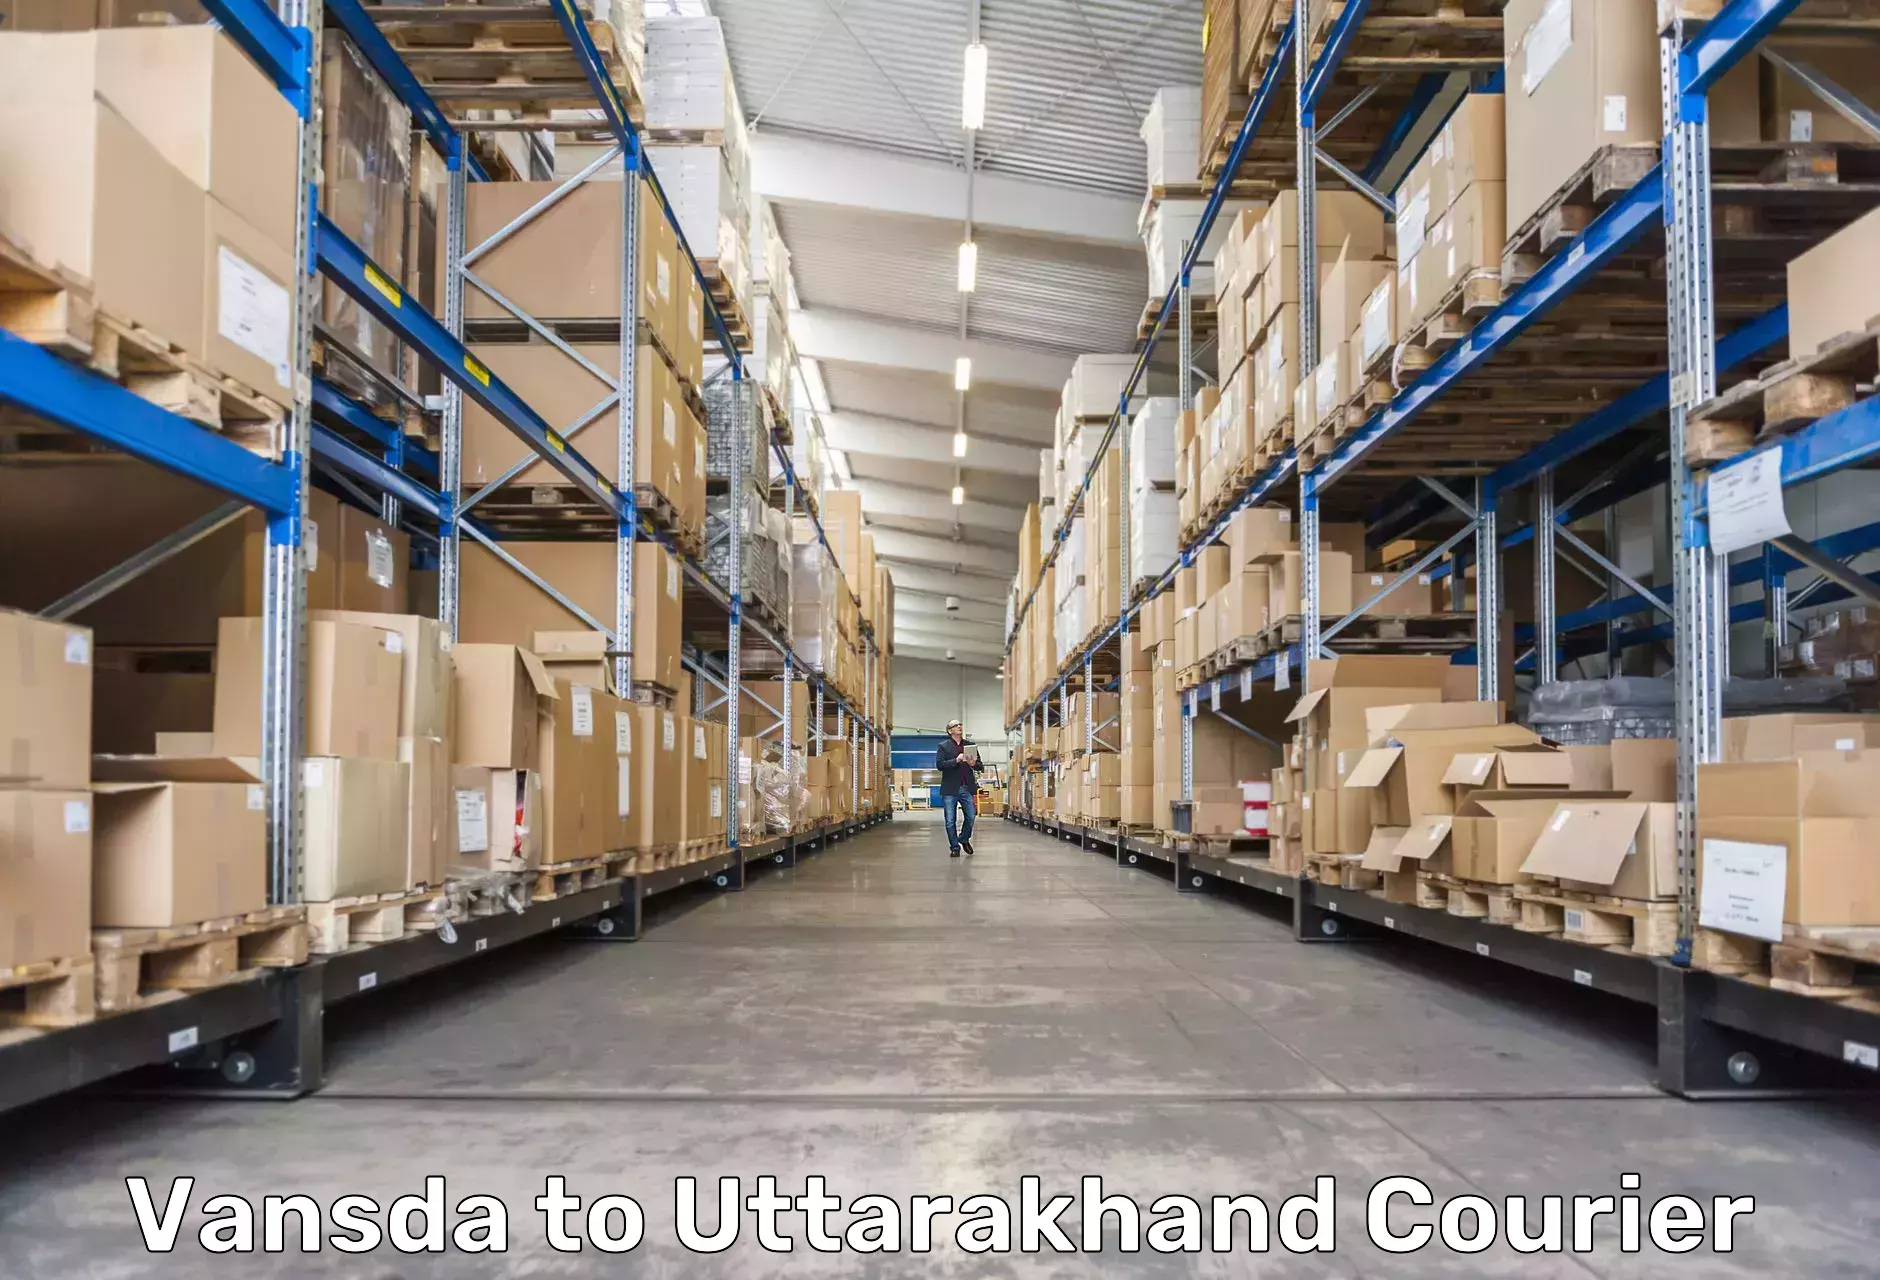 Flexible shipping options in Vansda to Uttarakhand